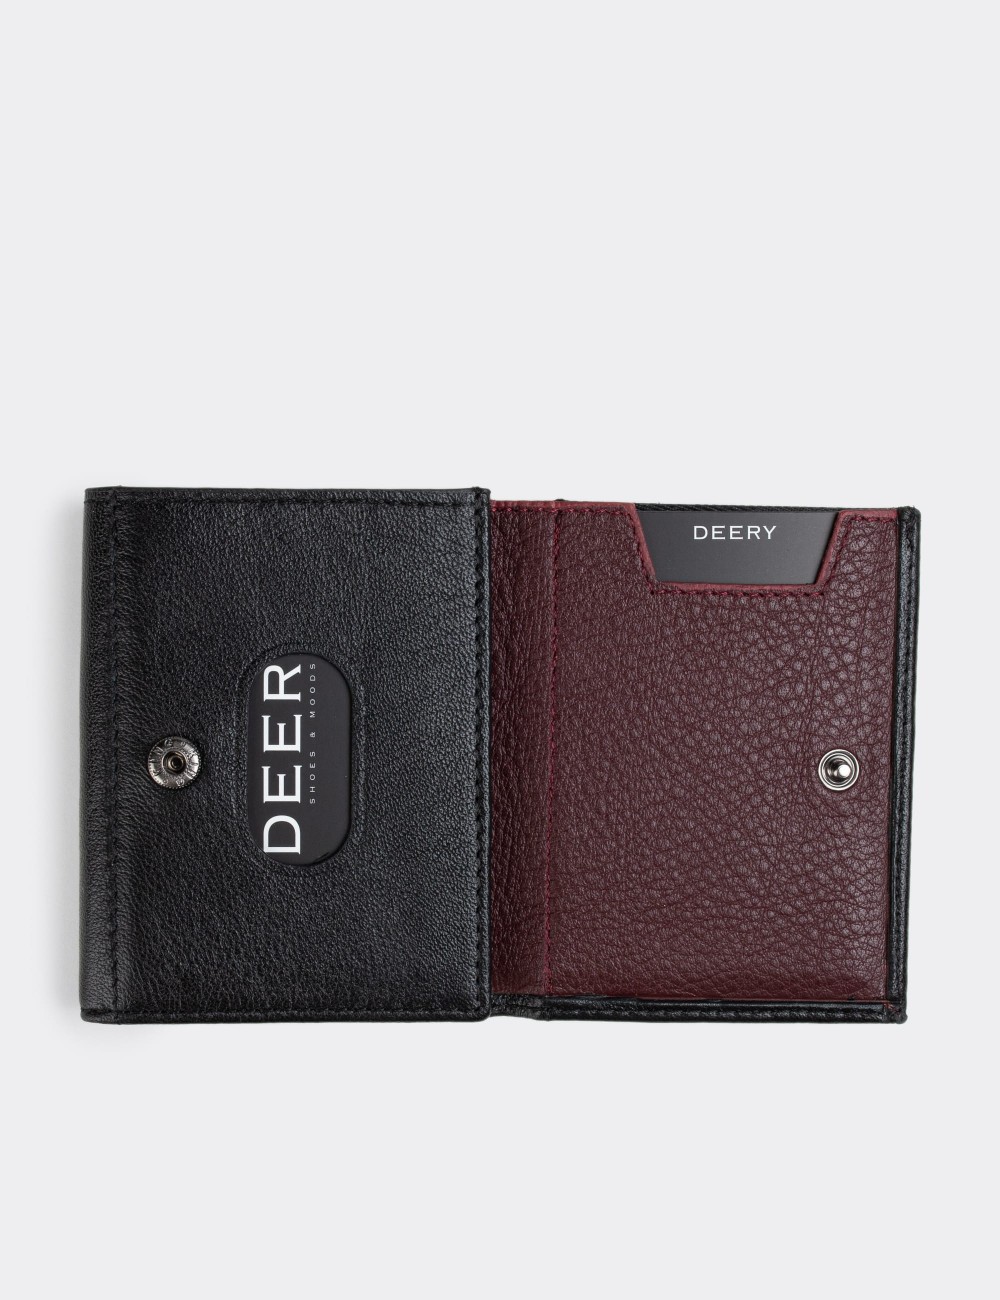  Leather Black Men's Wallet - 00224MSYHZ01